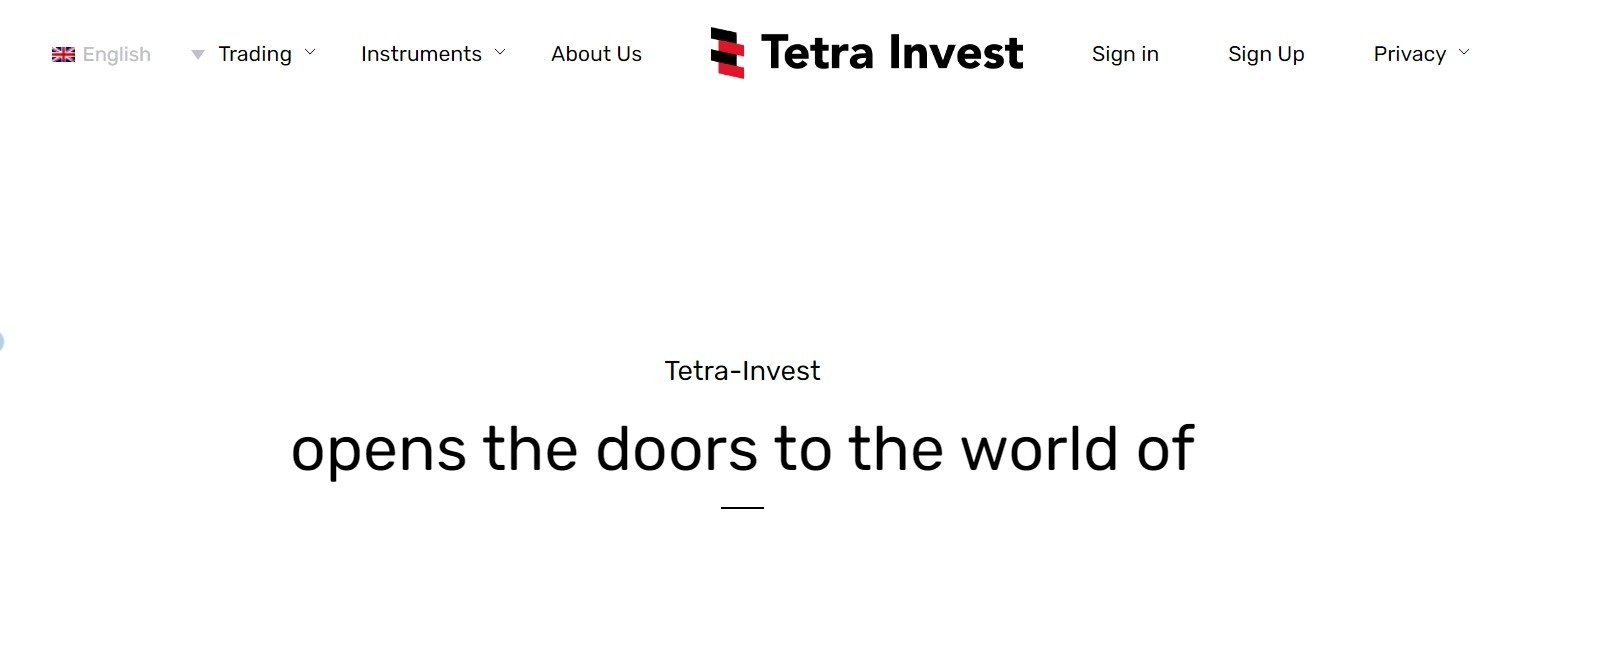 Тетра Инвест - международная инвестиционная компания